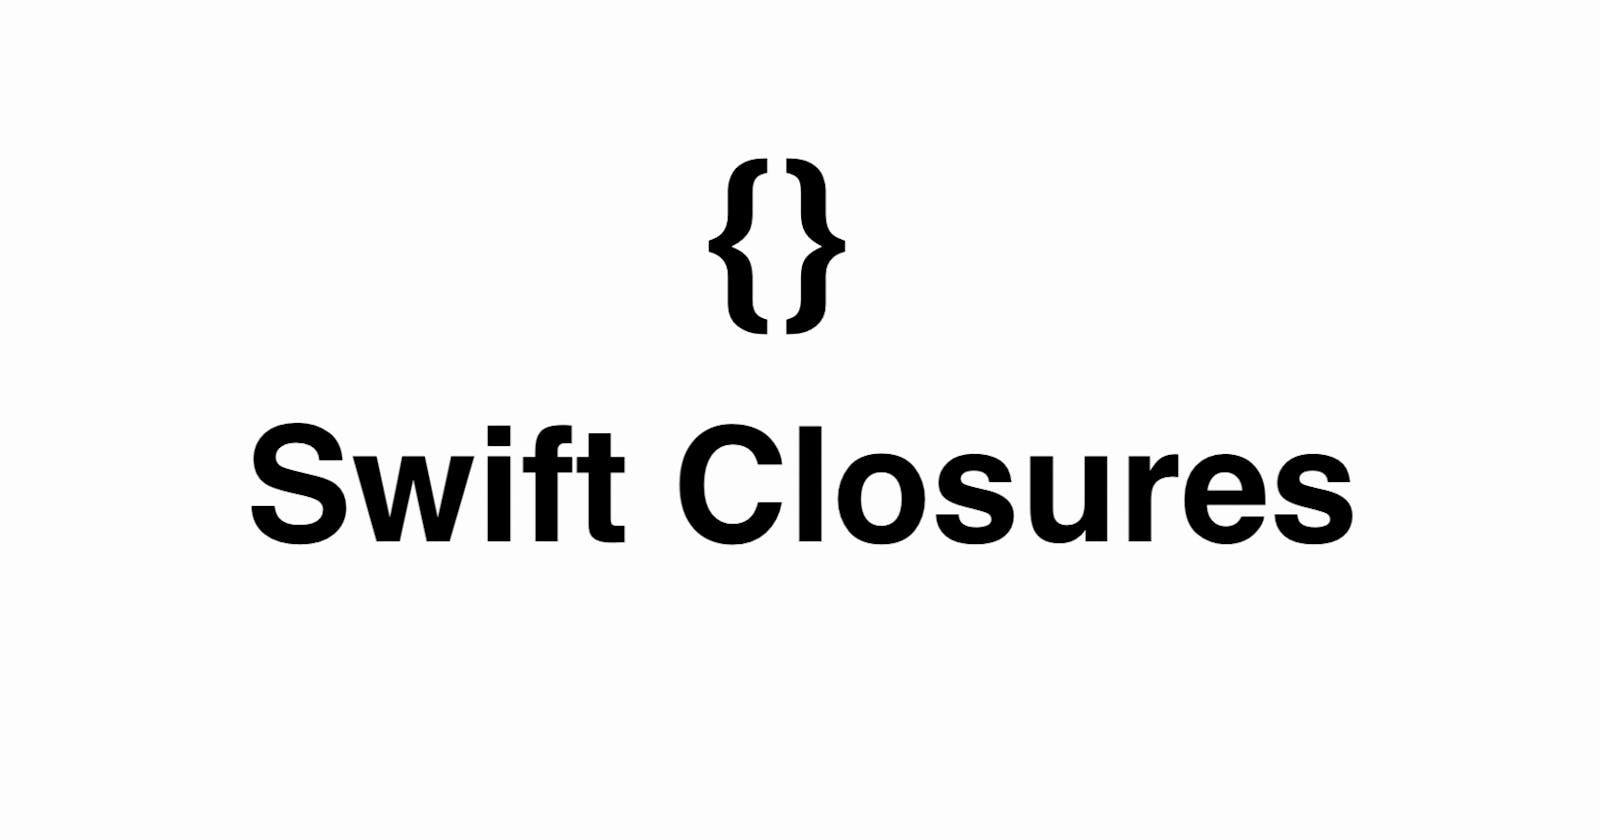 Understanding Swift Closures